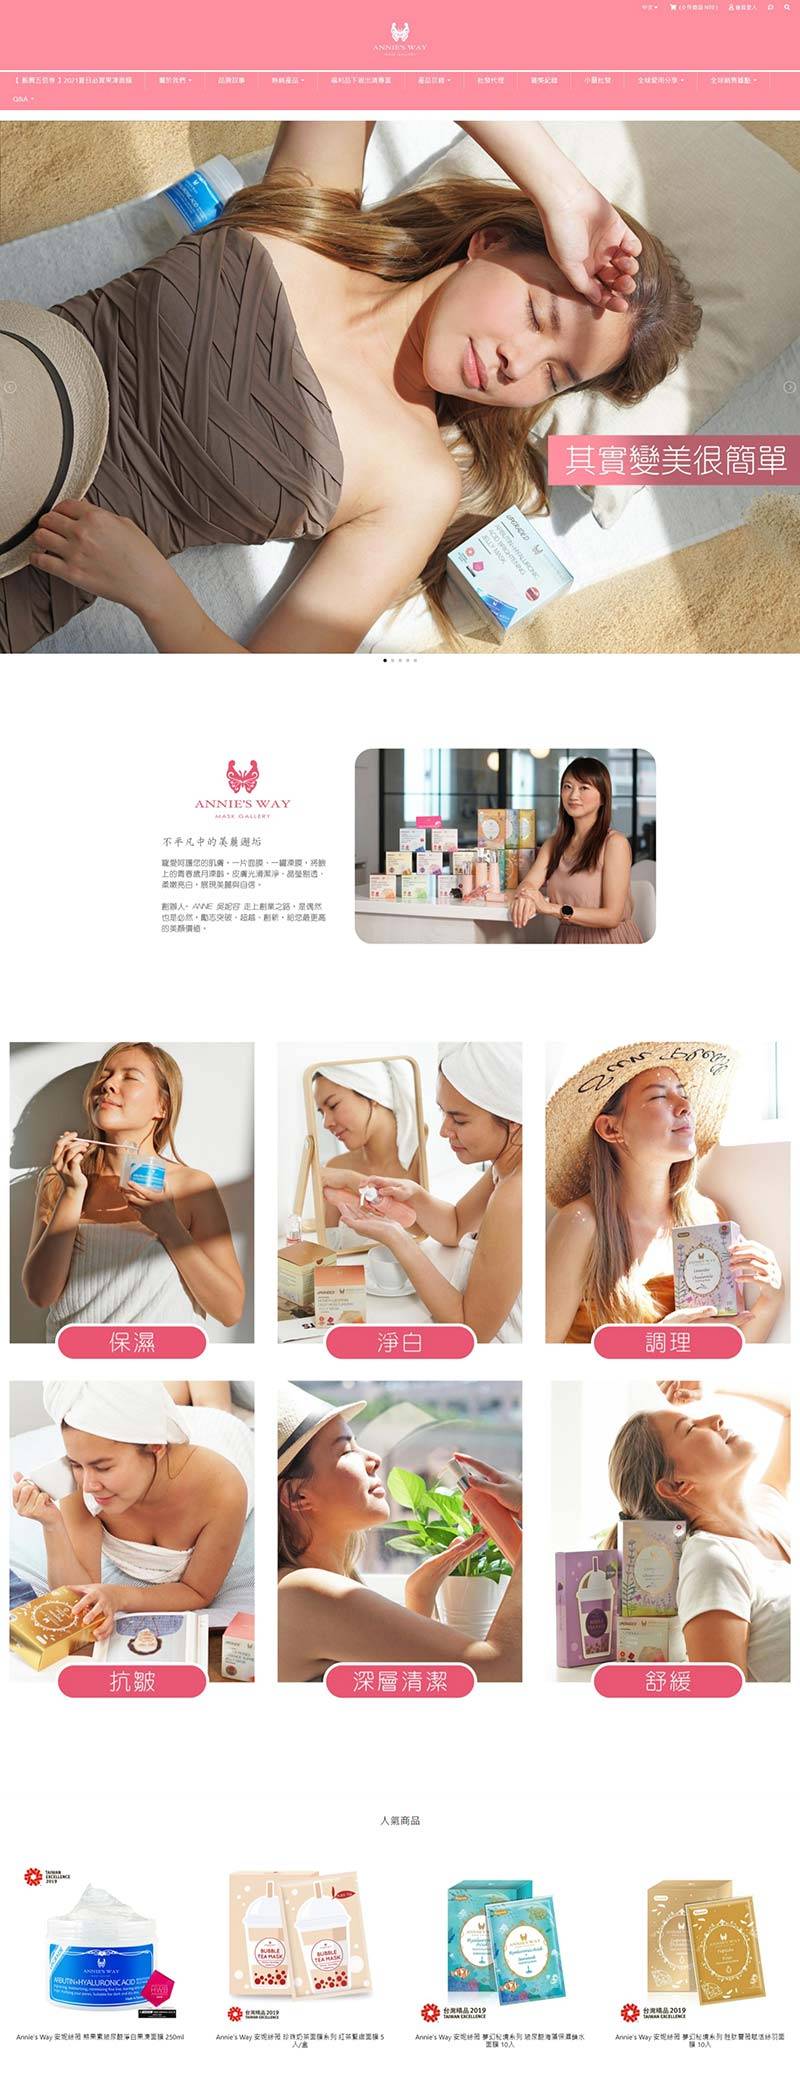 Anniesway 安妮丝薇-台湾清洁护肤品牌购物网站